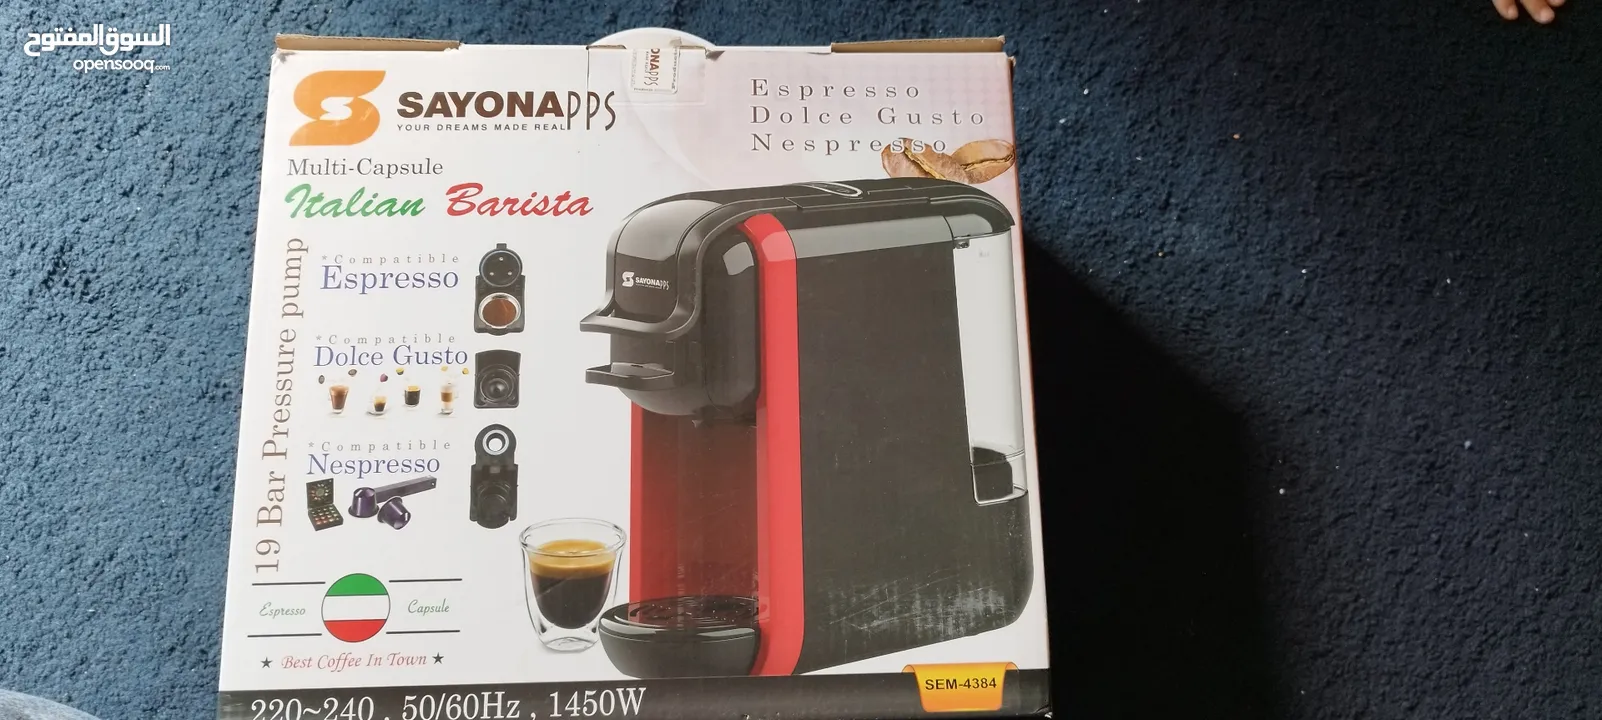 ماكينة صنع قهوة اسبرسو